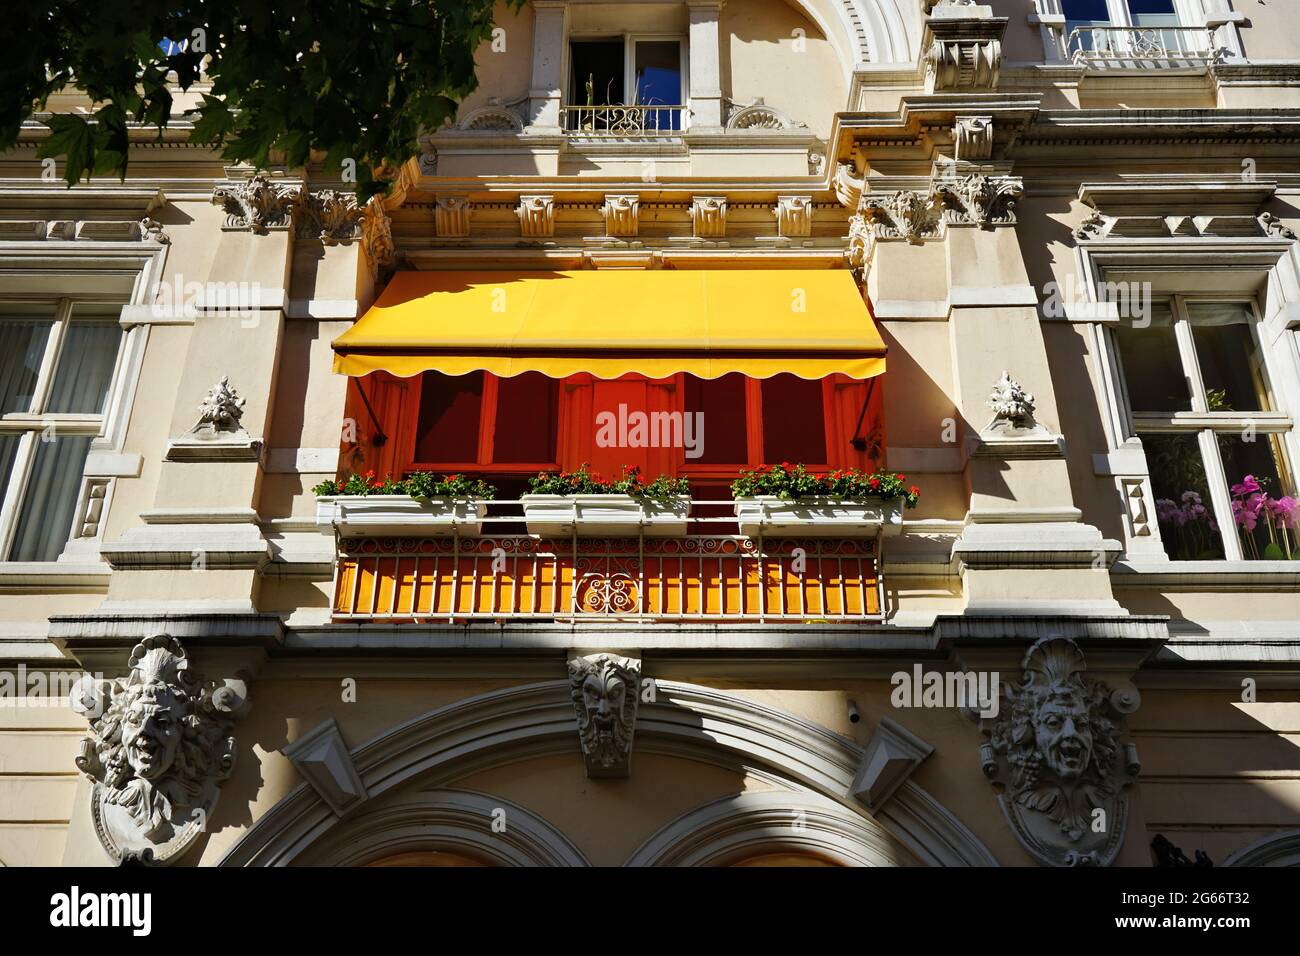 Bella vecchia casa privata in Germania con tenda di colore arancio. Foto Stock